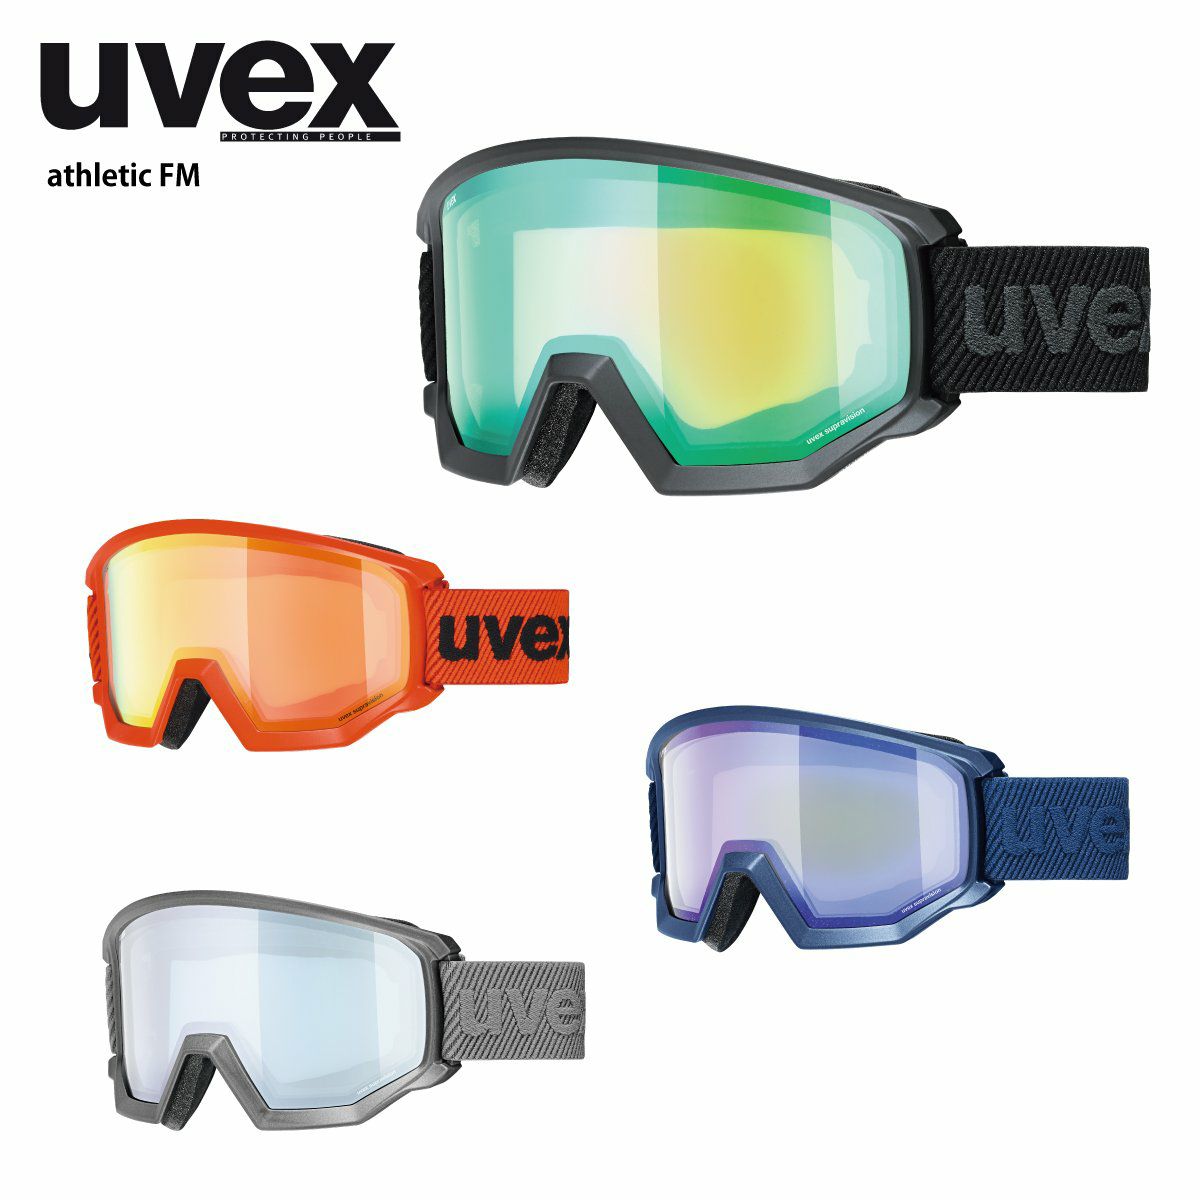 ウベックス スキースノーボードゴーグル ユニセックス ハイコントラストミラー シングルレンズ メガネ使用可 athletic CV ネイビー